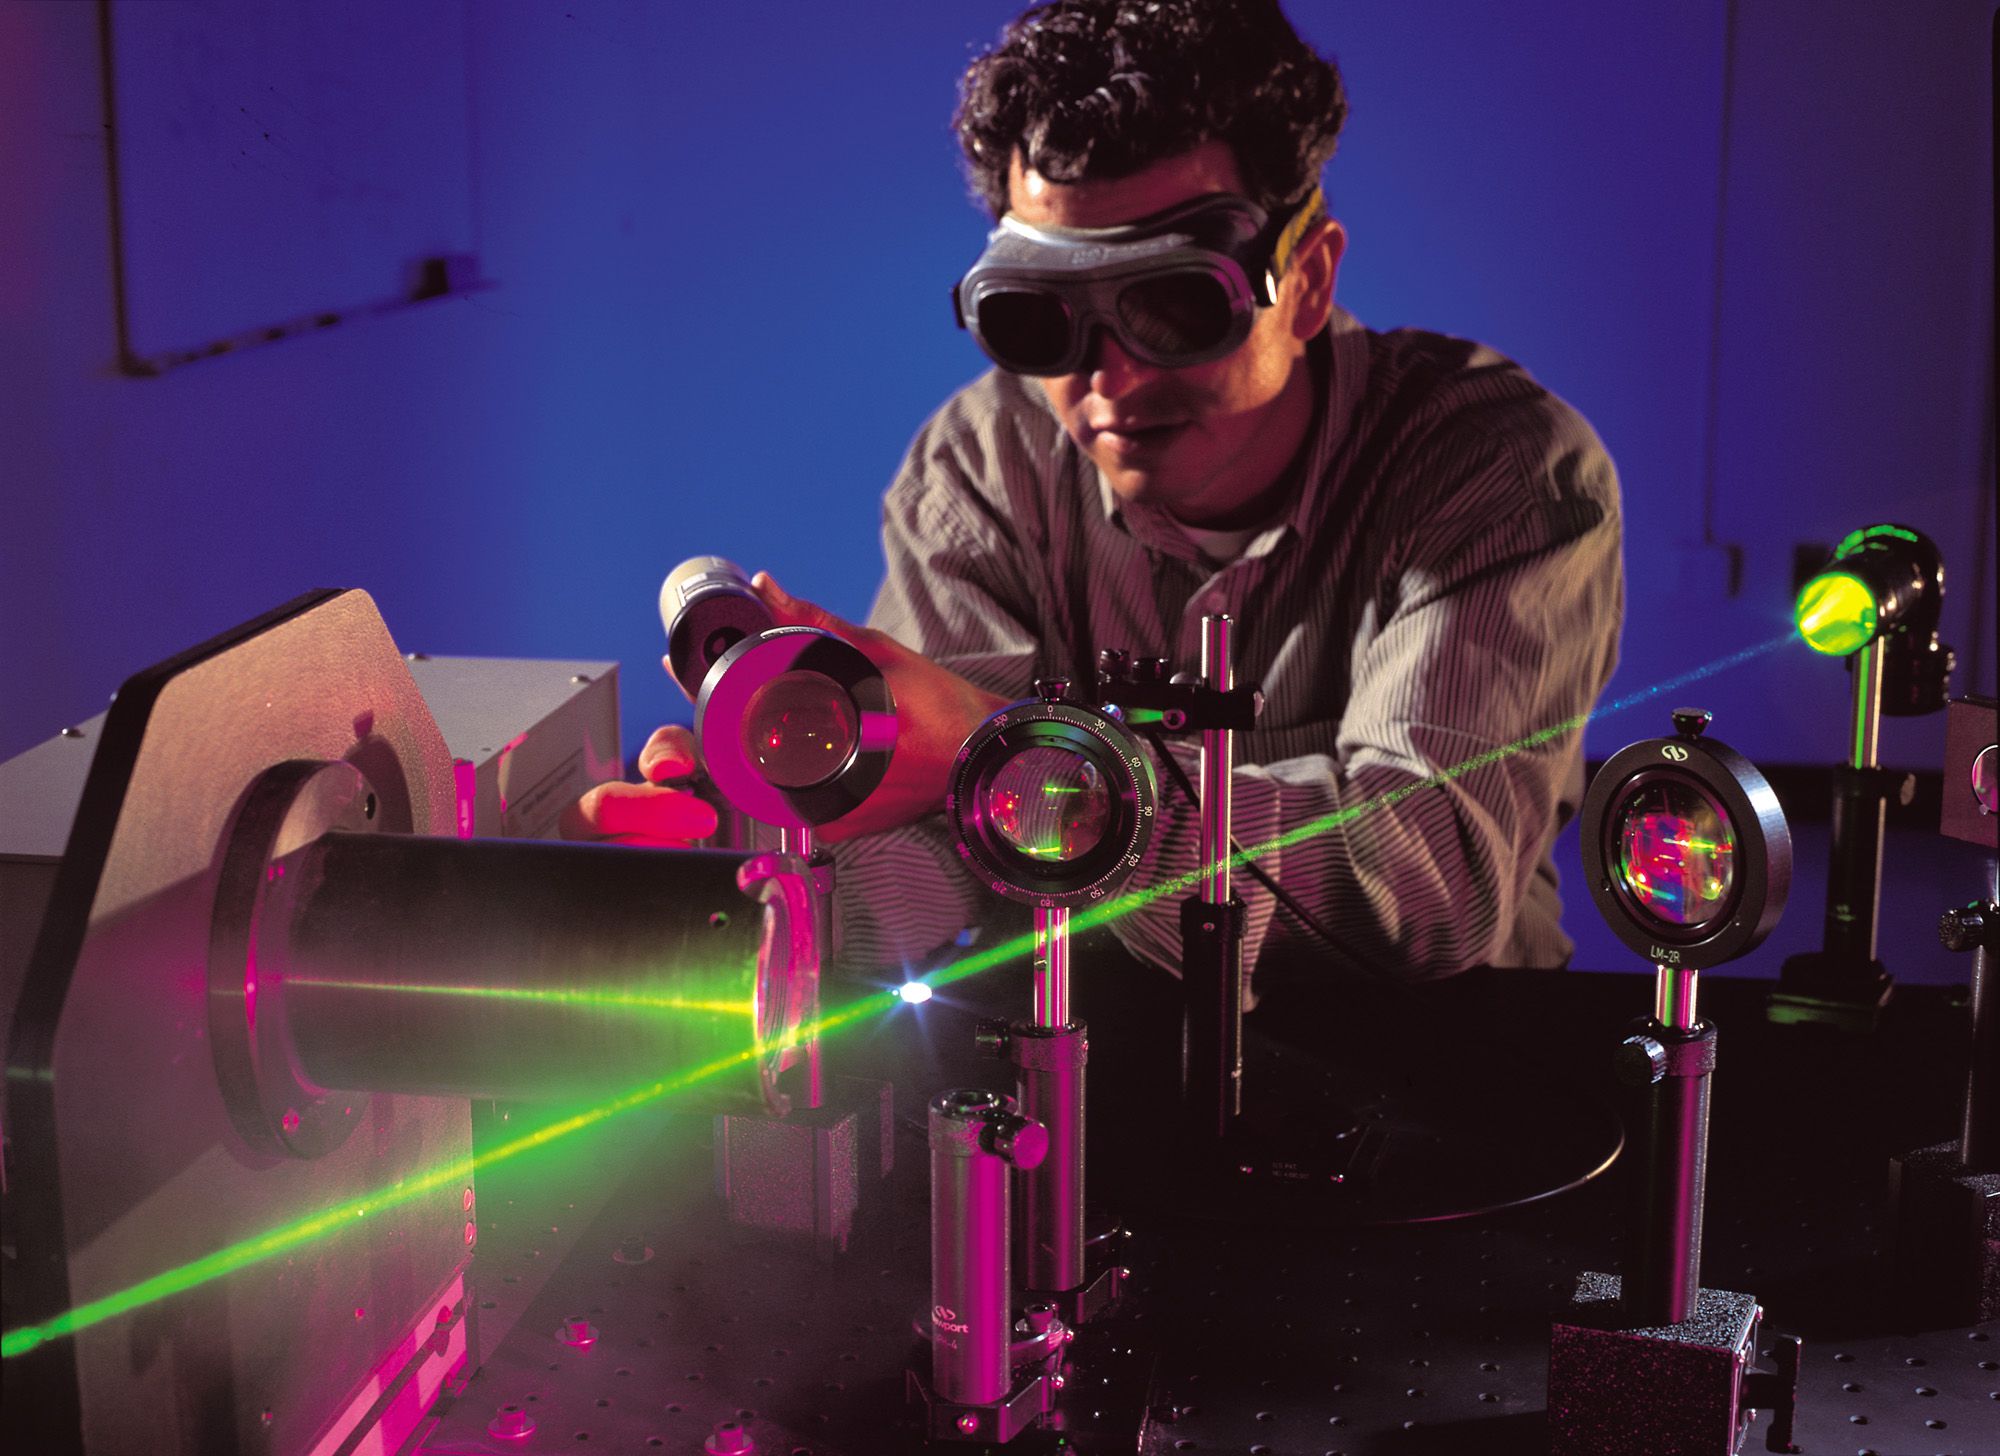 Científicos del MIT descubren cómo encoger objetos usando un láser